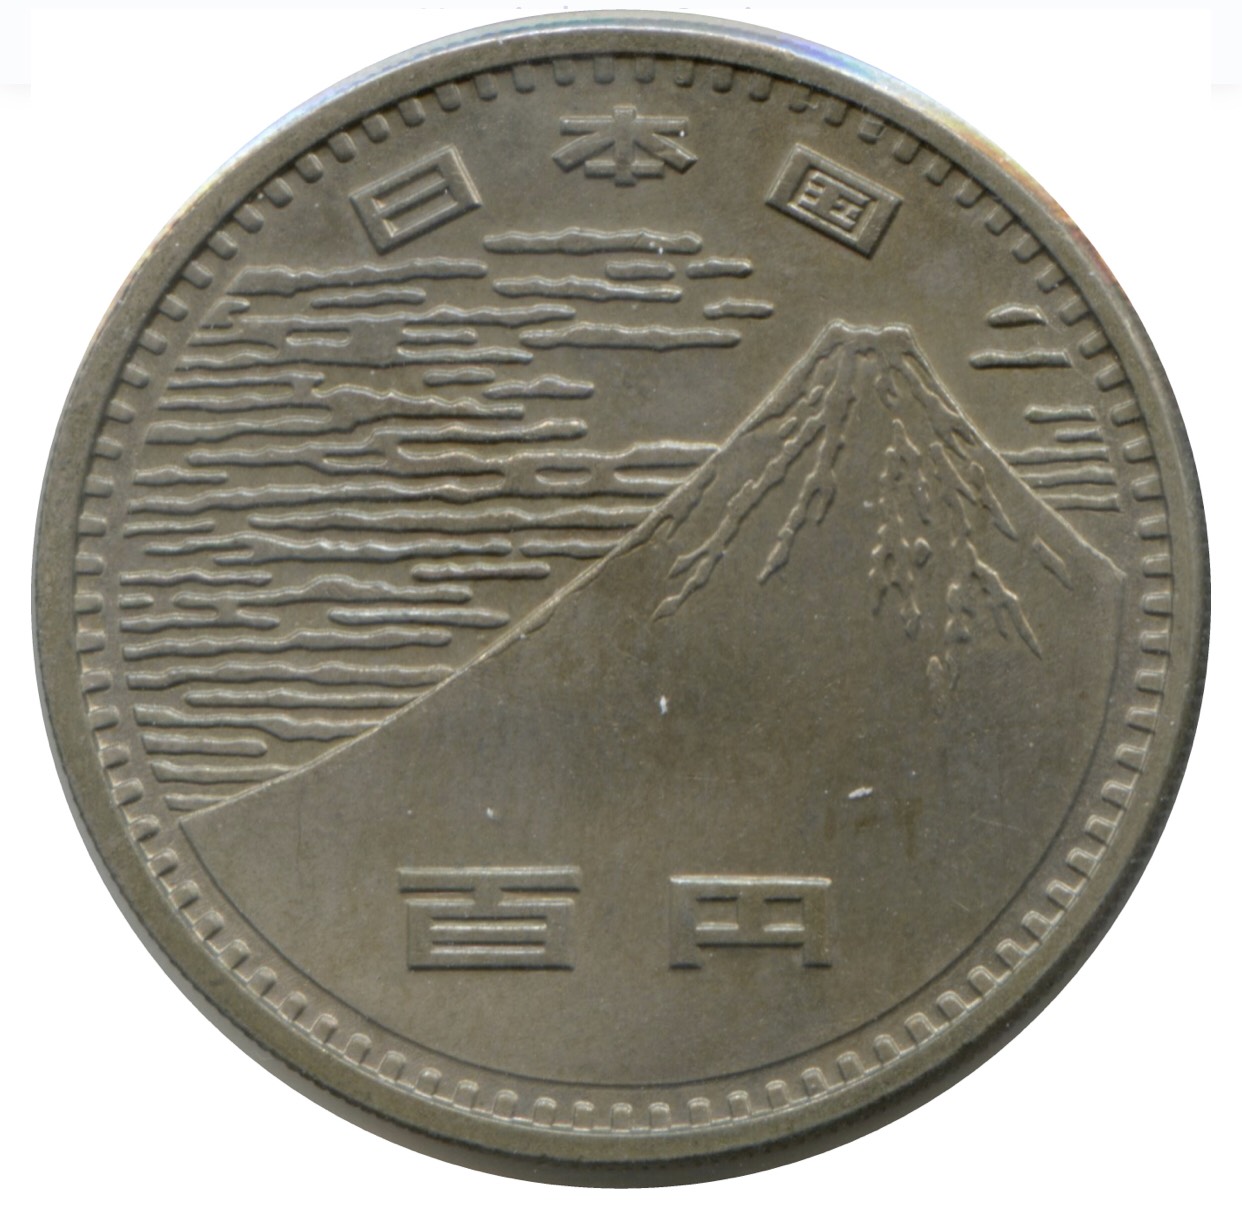 Xu Nhật bản 100 Yên 1970 OSAKA EXPO kỷ niệm, tặng kèm hộp nhựa trưng bày bảo quản sang trọng